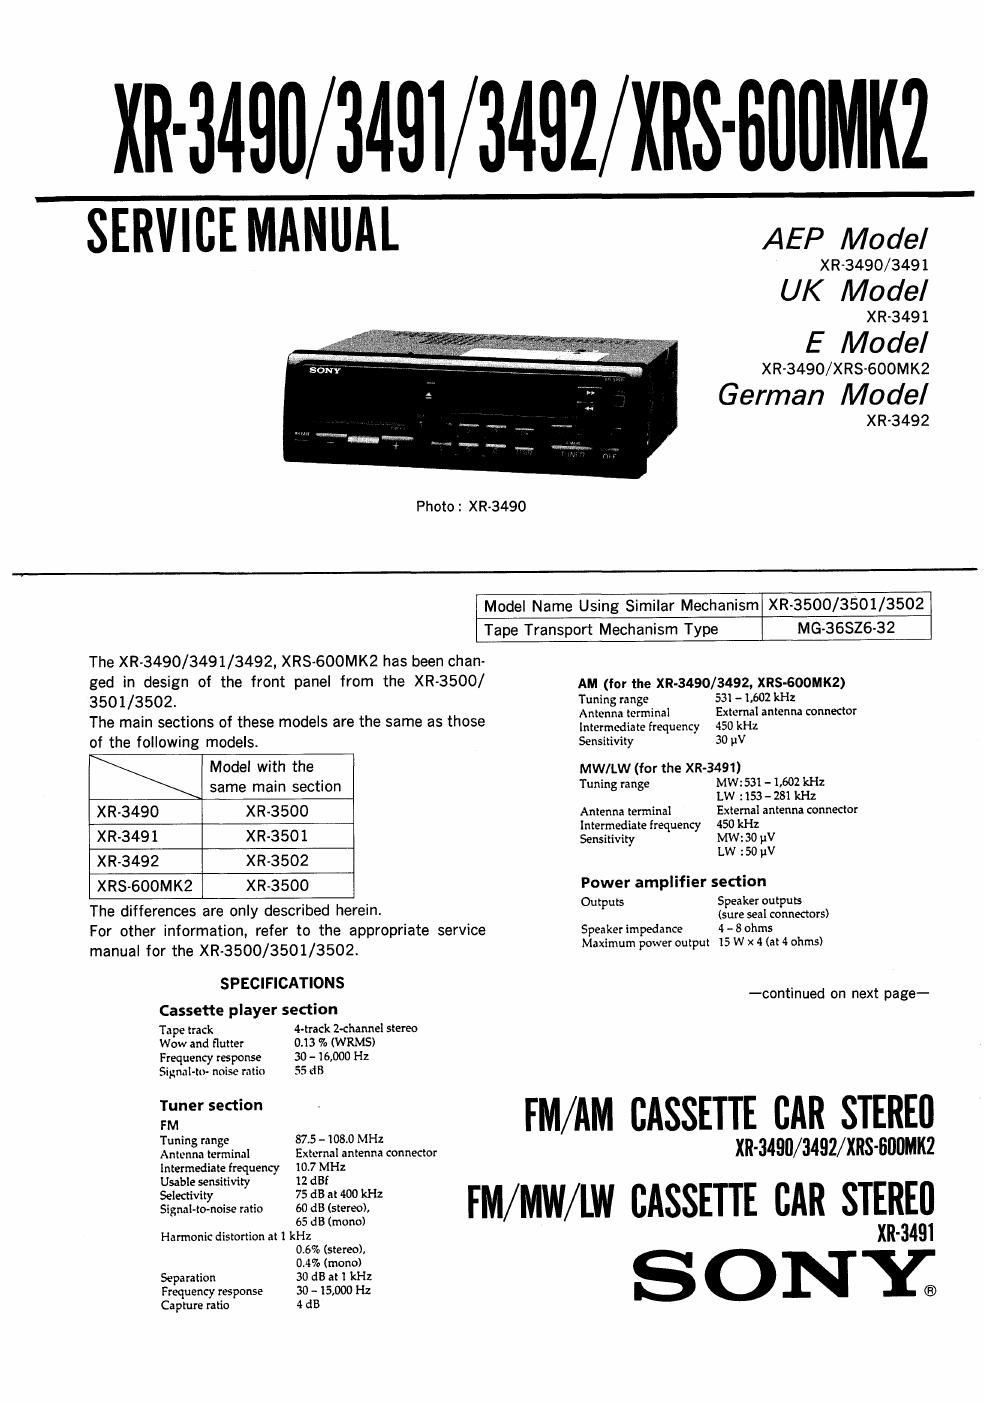 sony xrs 600 mk2 service manual